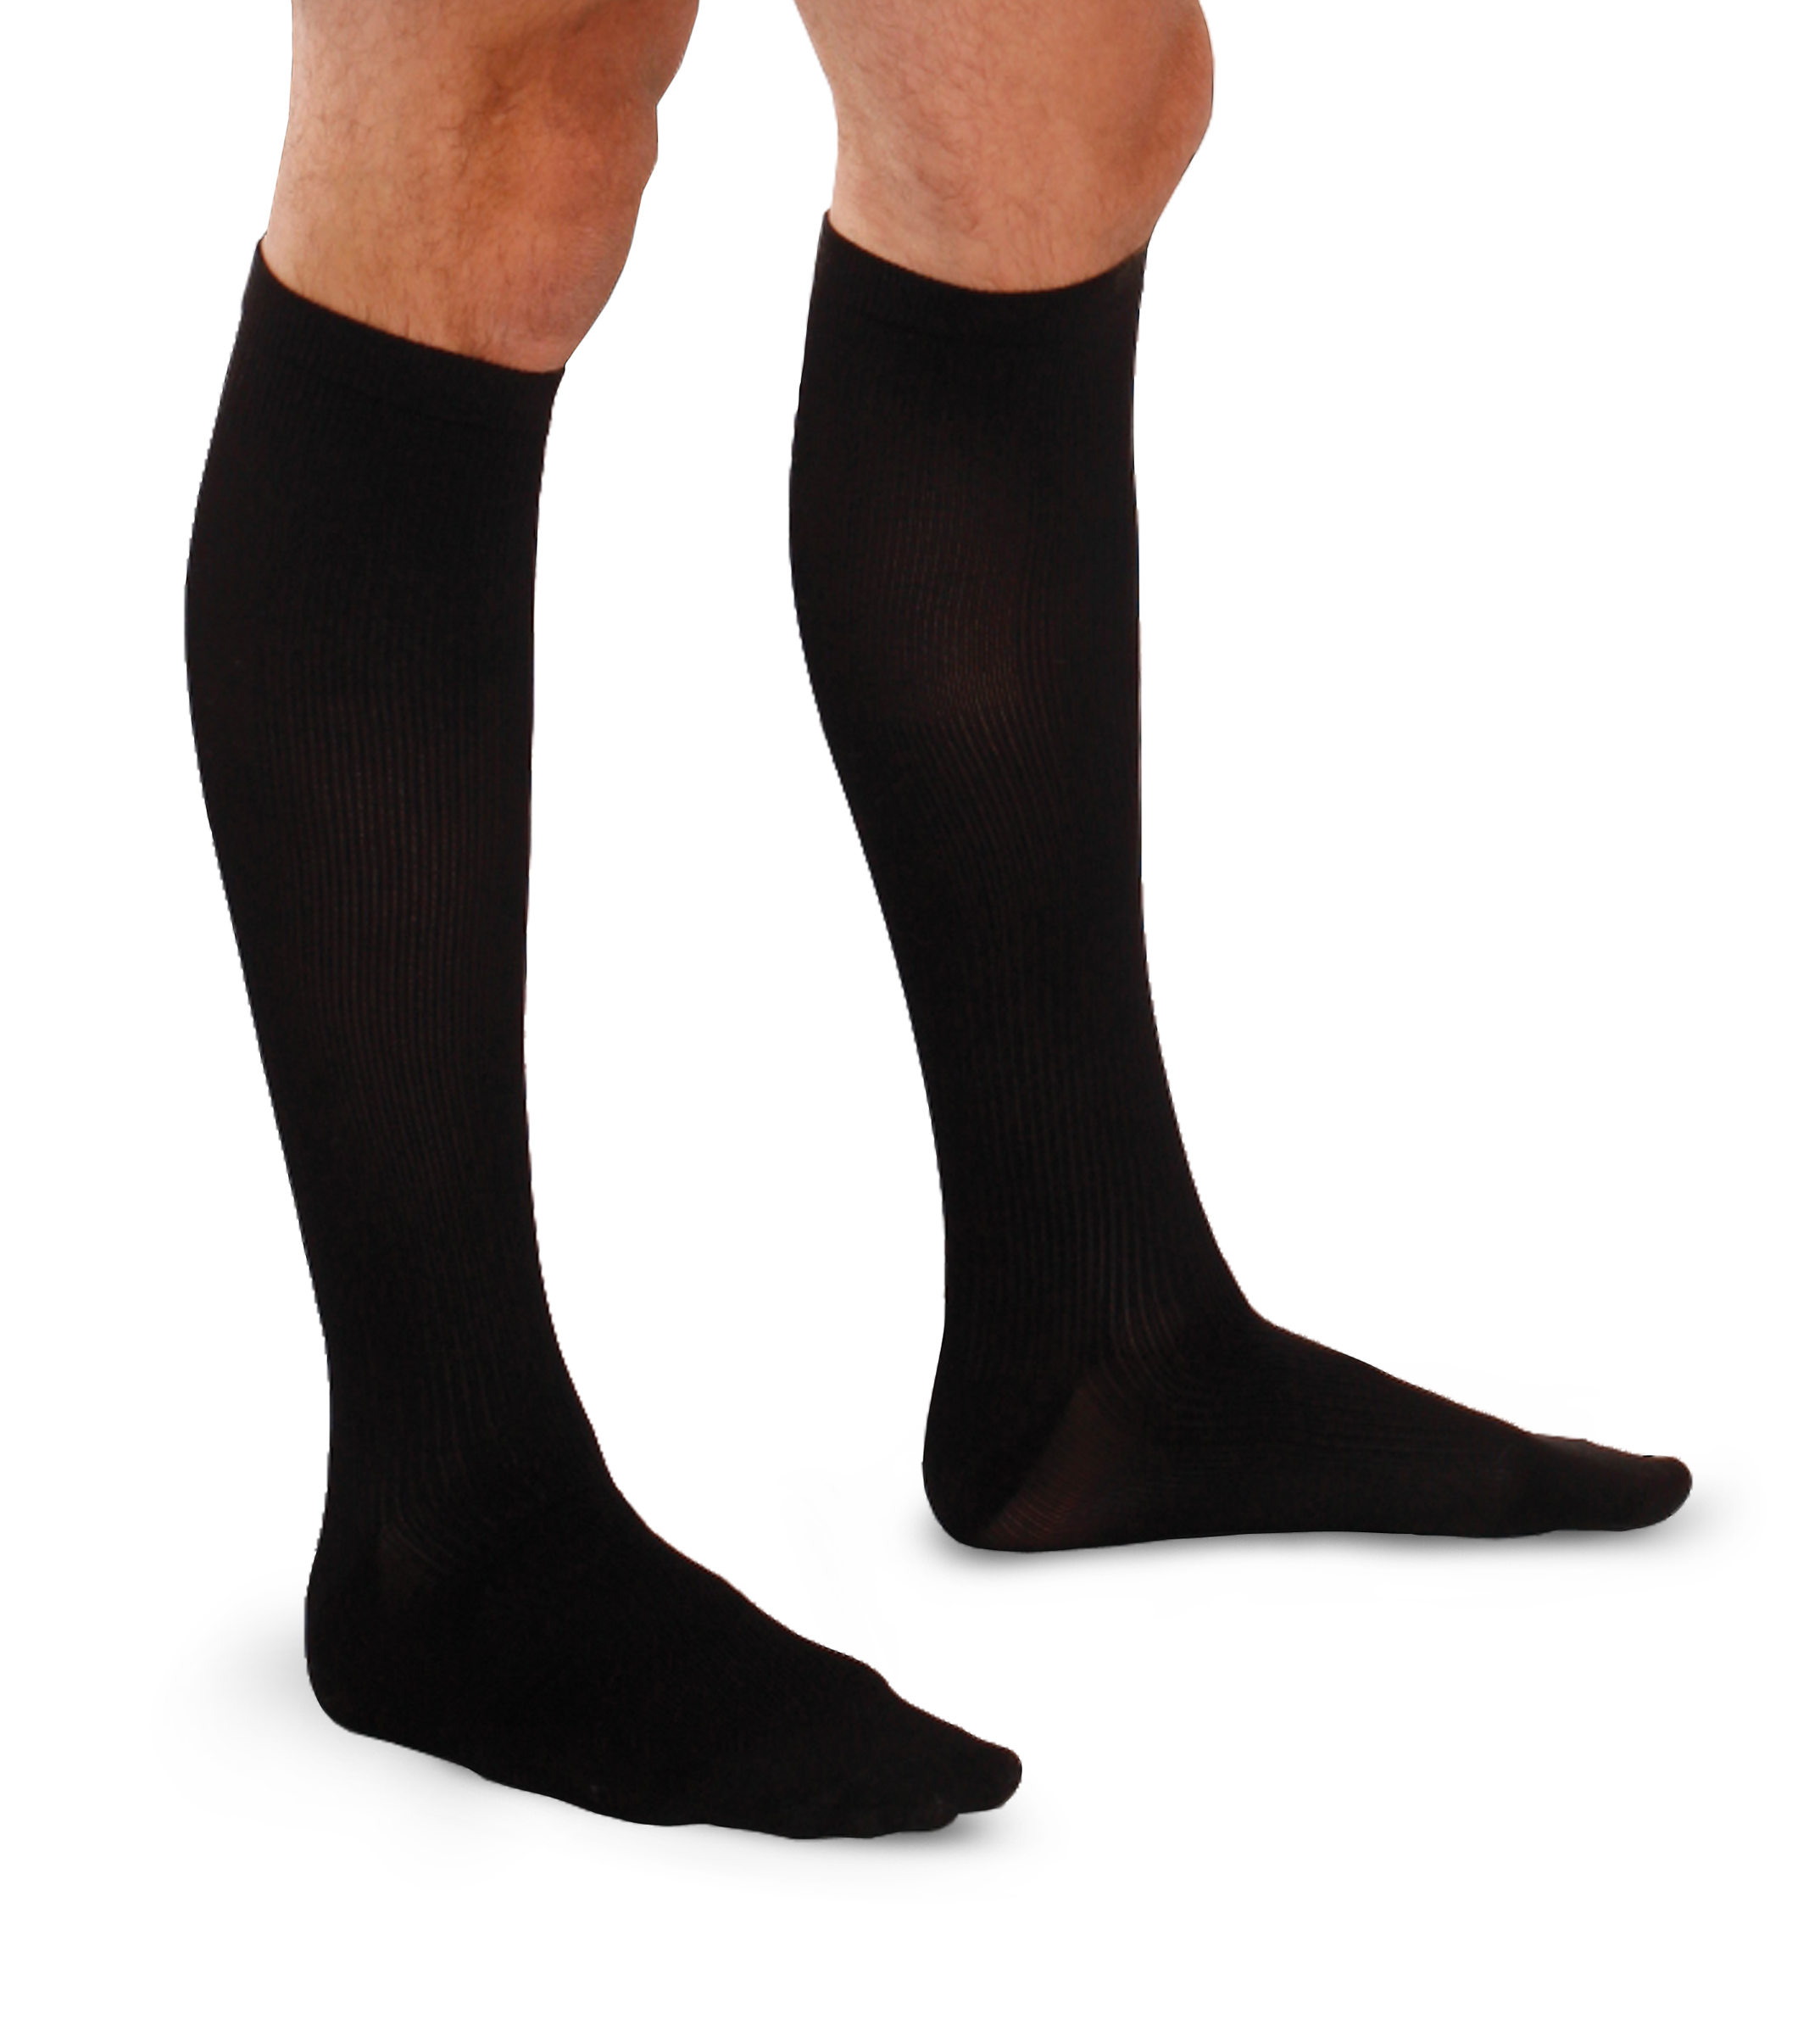 Therafirm Light Mens Support Socks